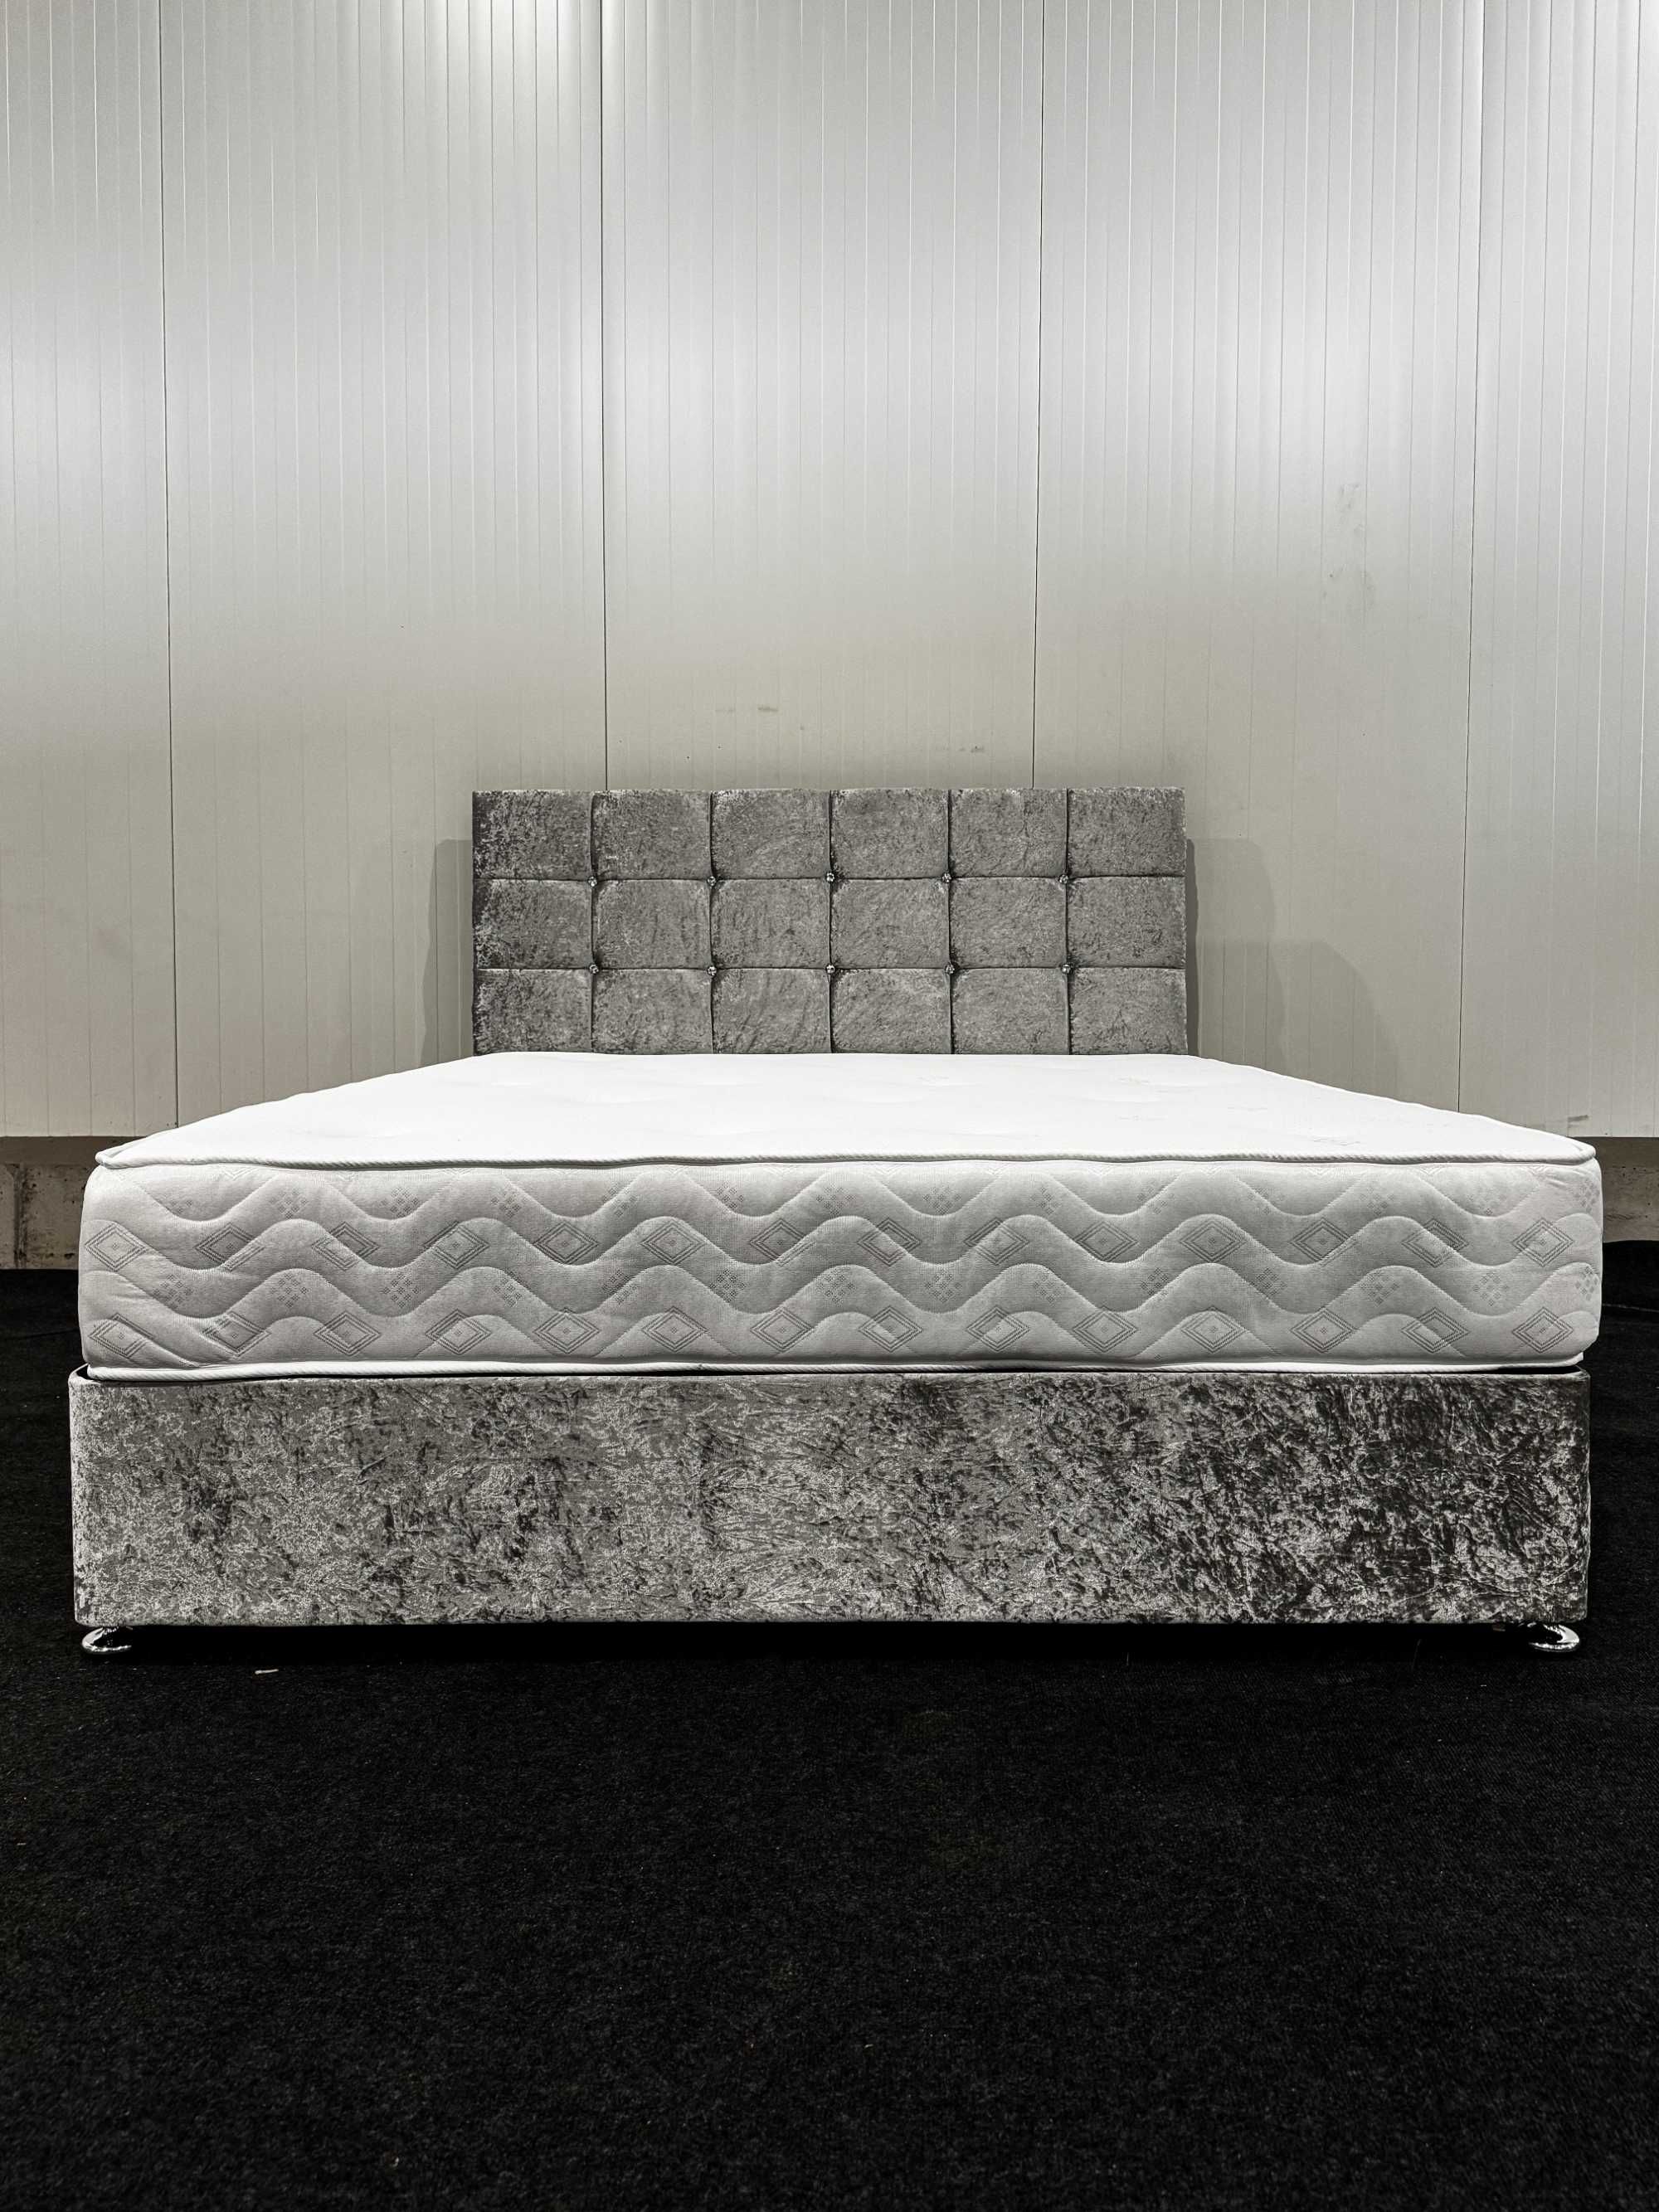 Łóżko w zestawie z materacem. Wymiary 160cmx200cm